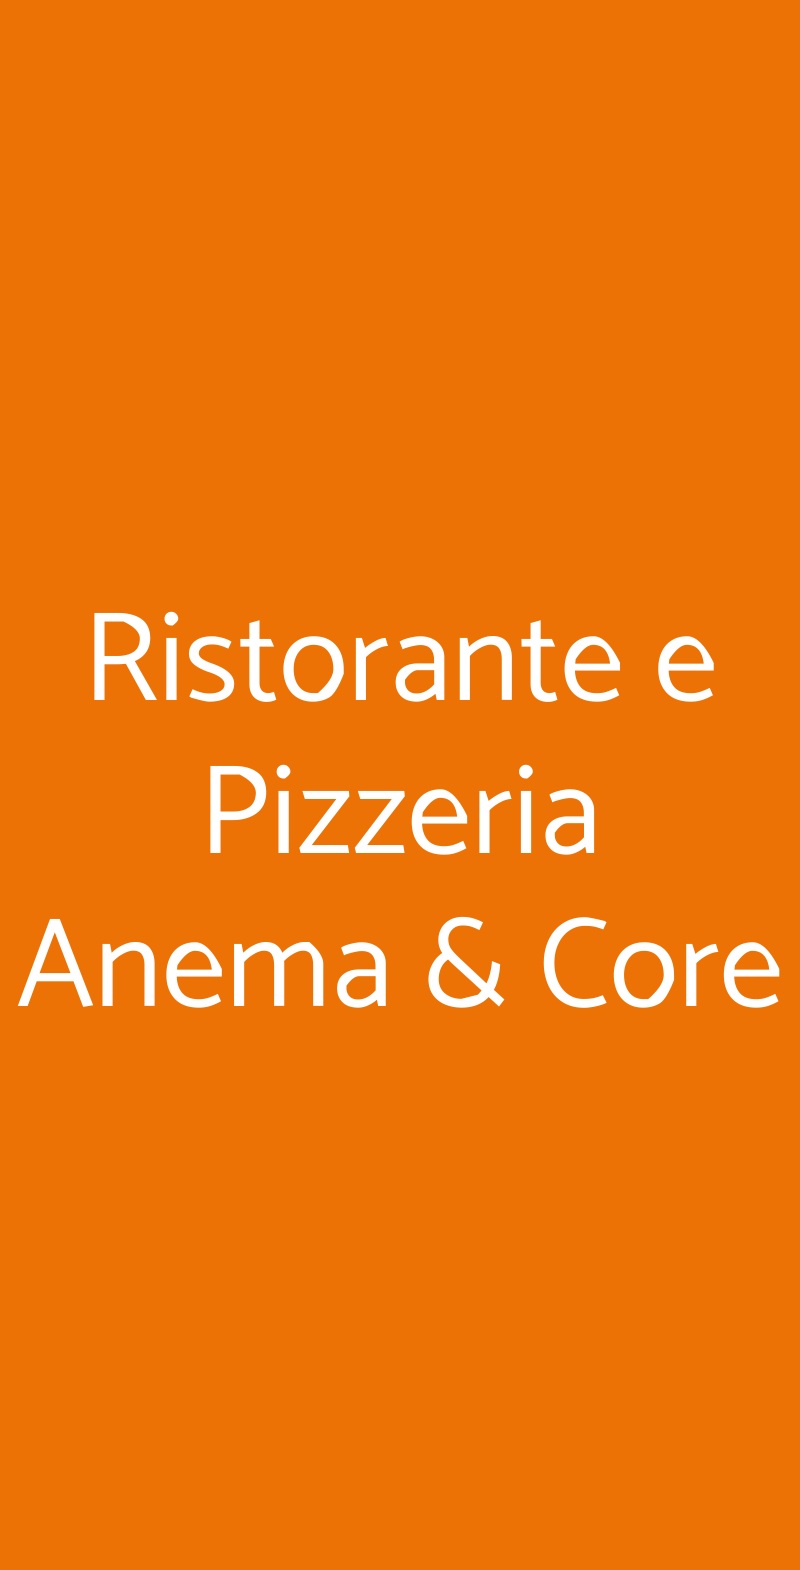 Ristorante e Pizzeria Anema & Core Imola menù 1 pagina